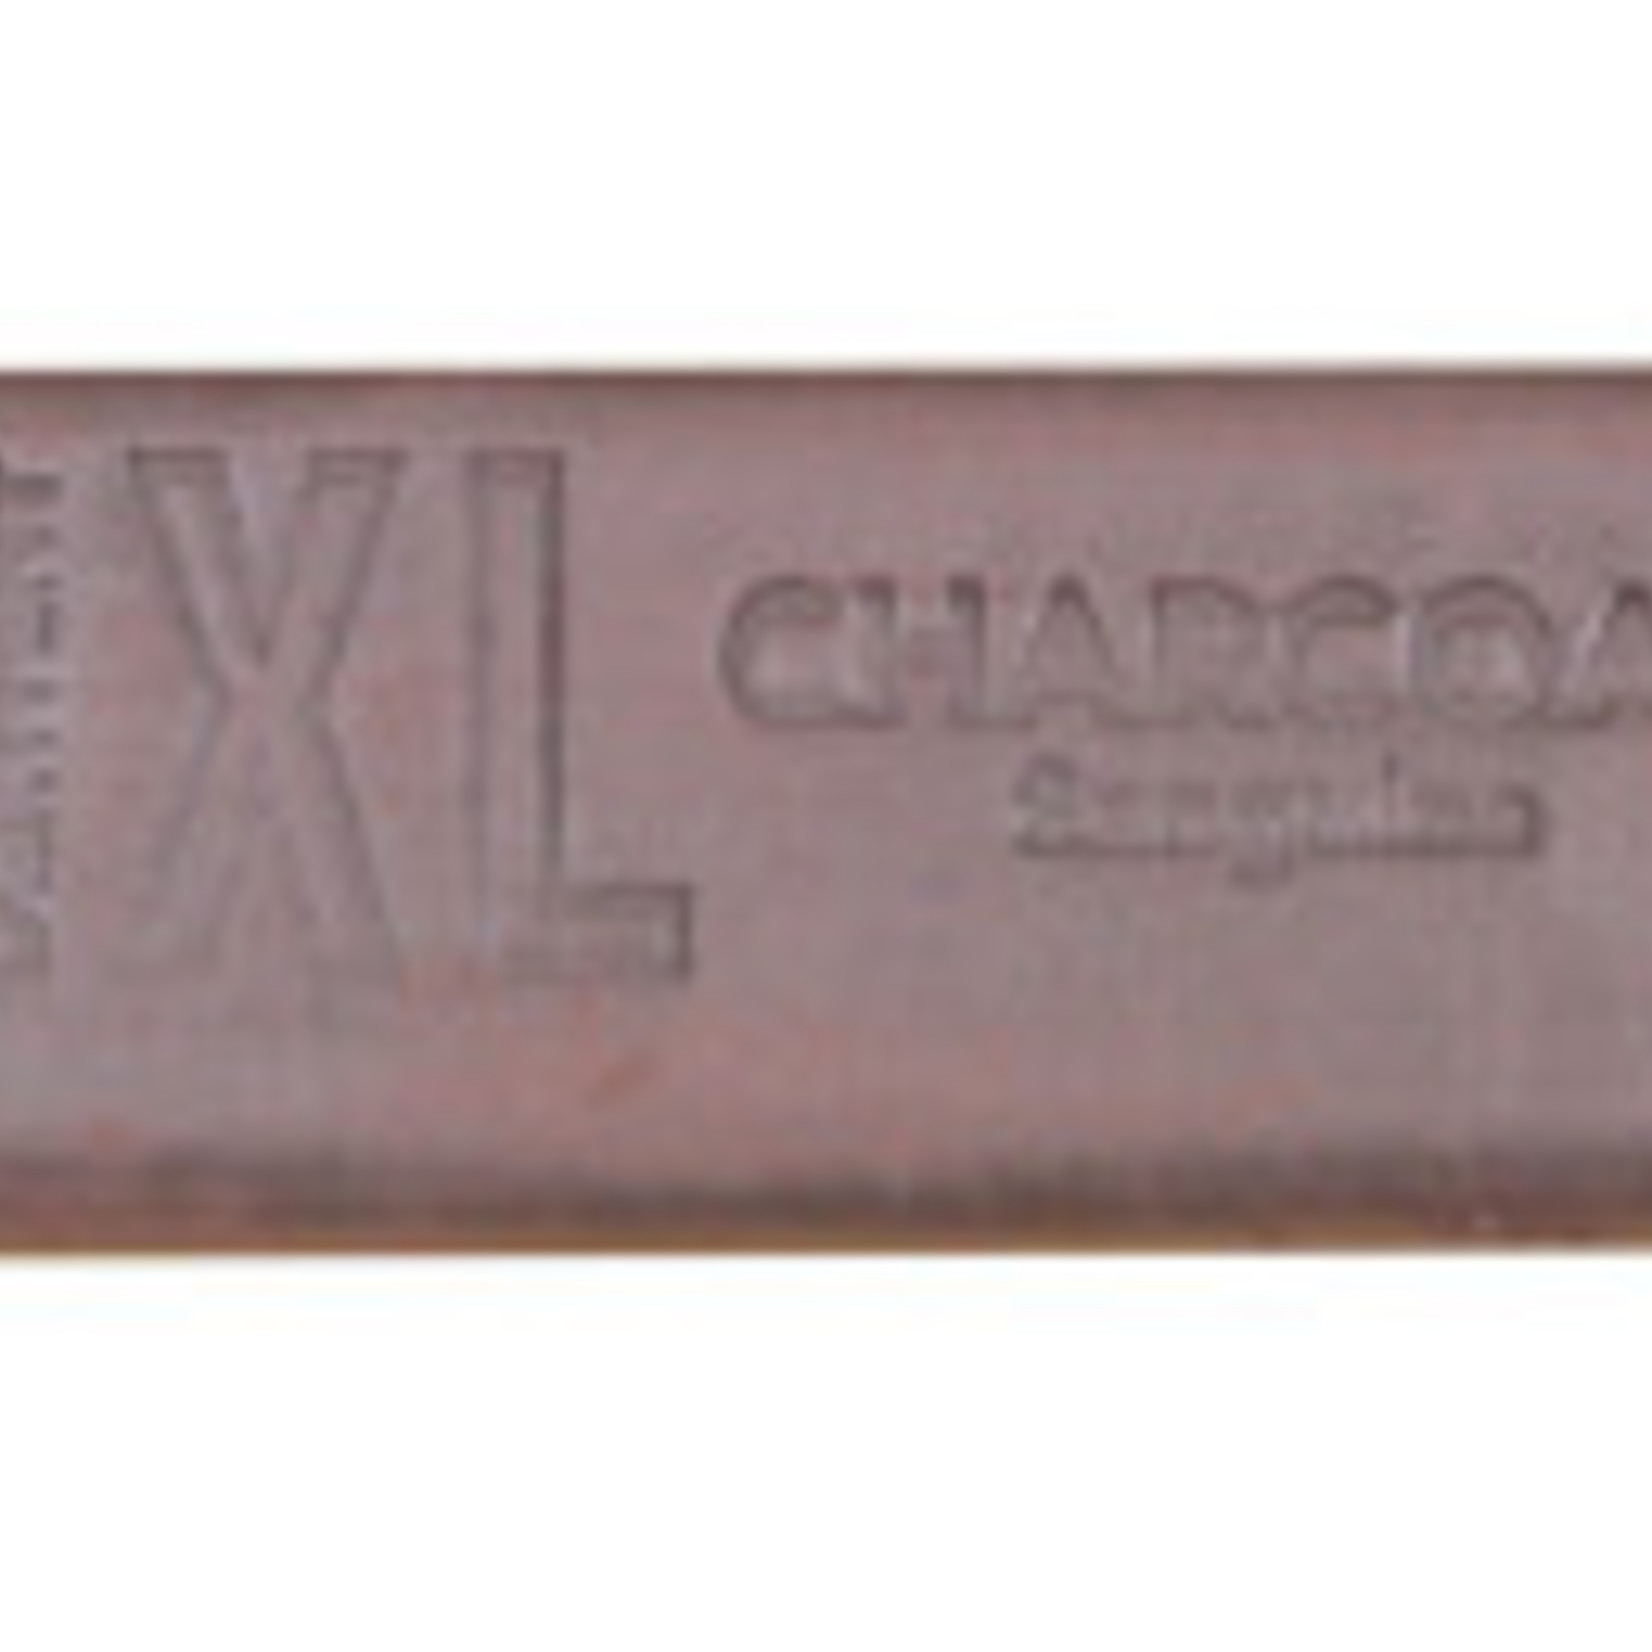 DERWENT DERWENT XL CHARCOAL 02 SANGUINE